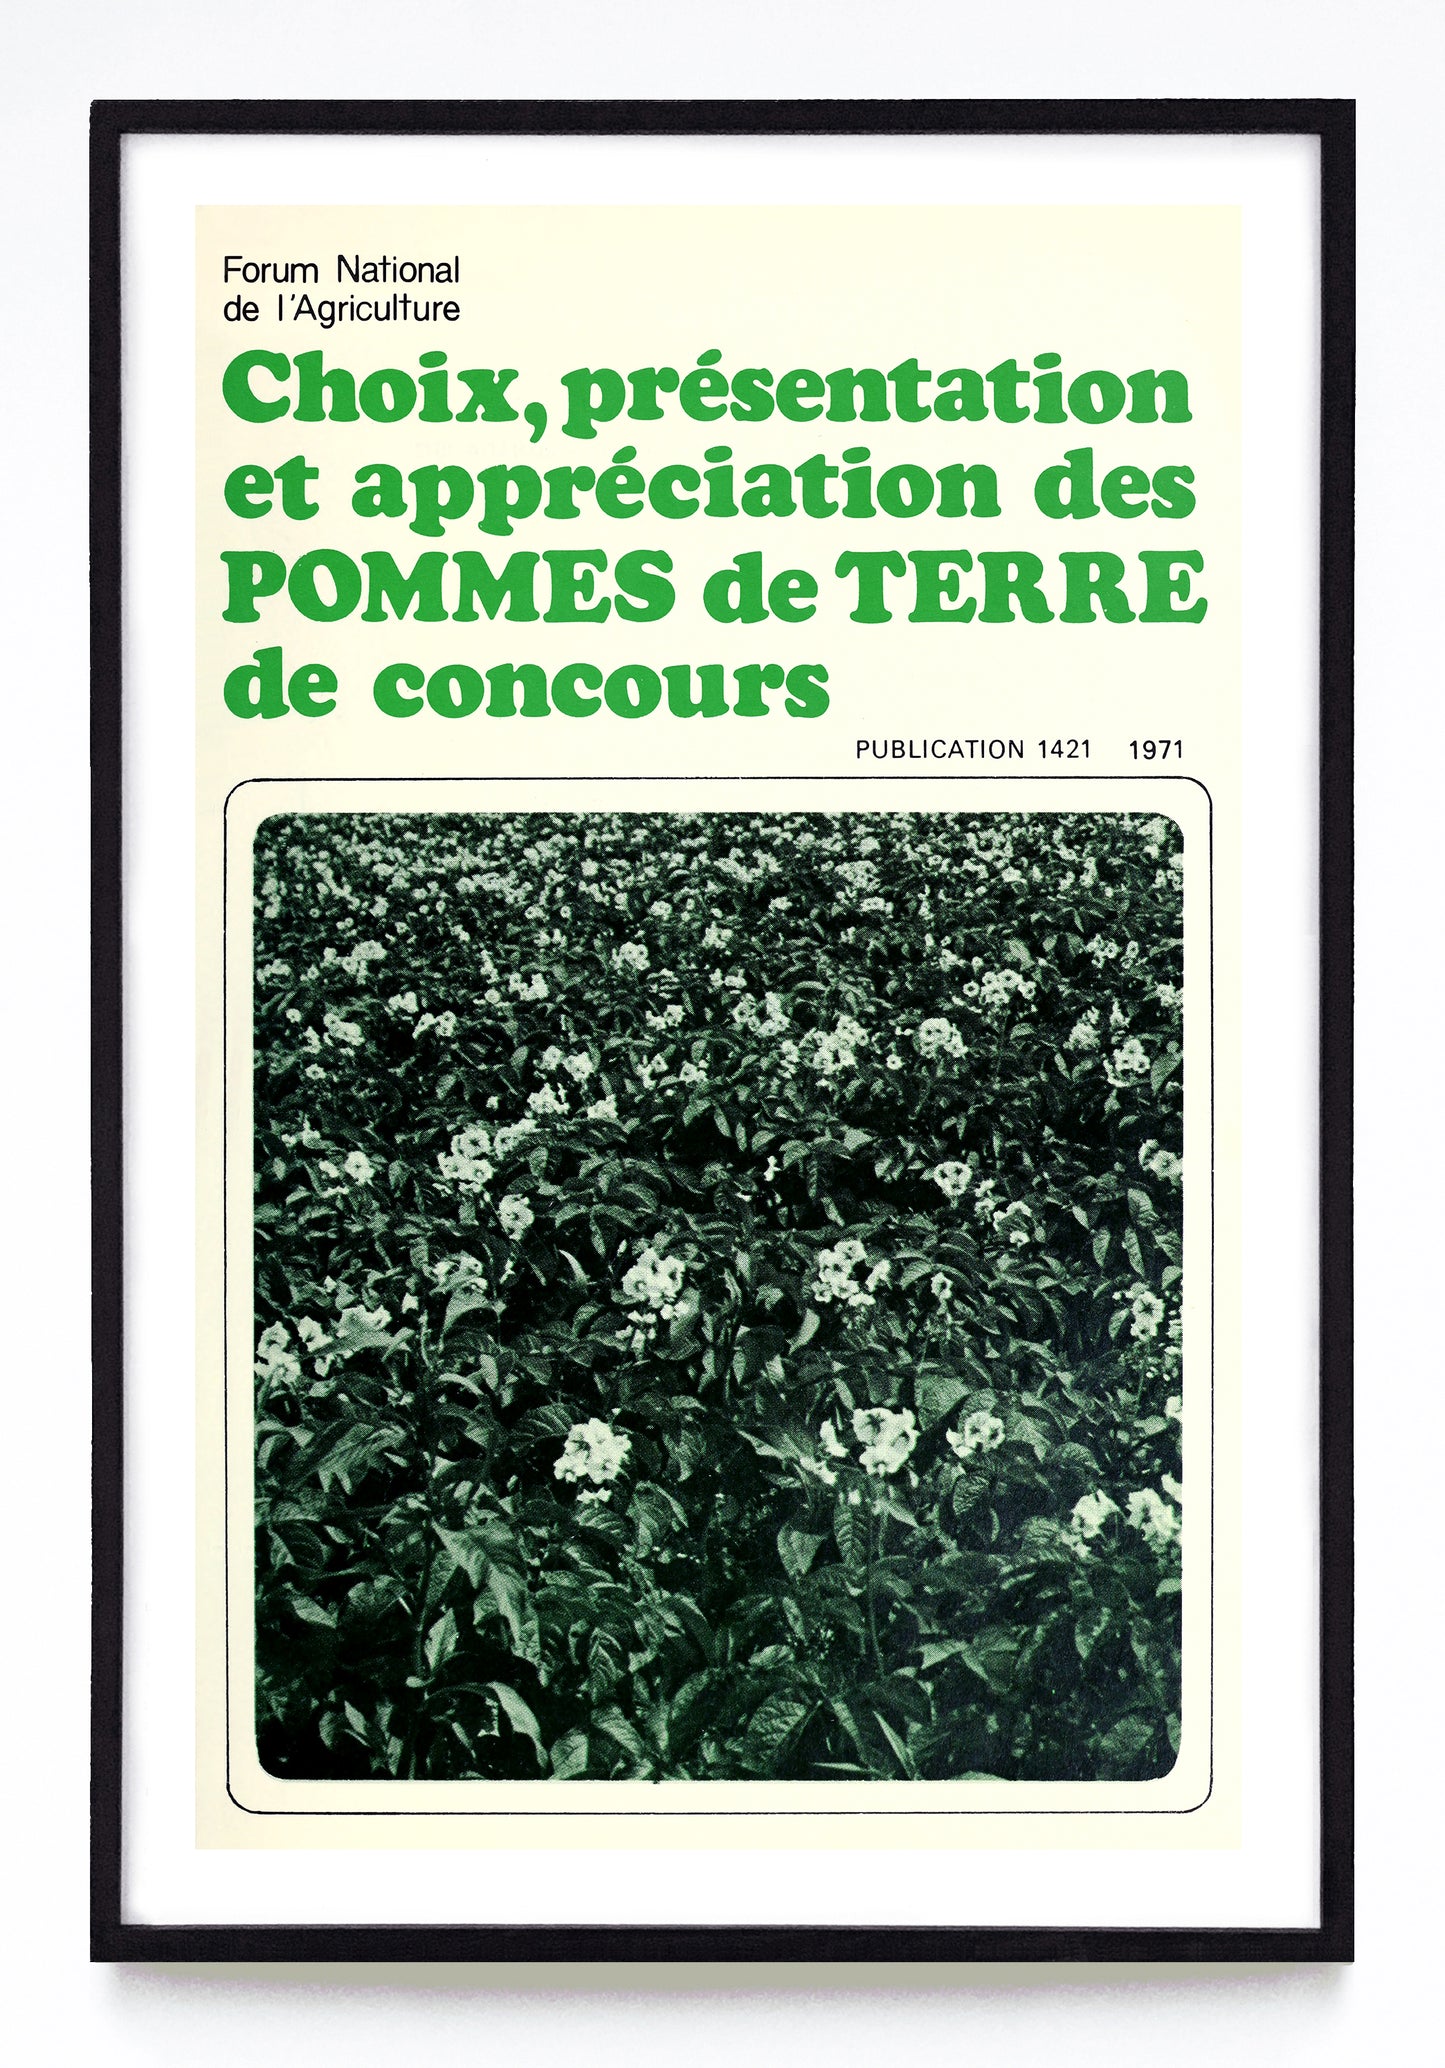 "Selecting, Exhibiting & Judging Potatoes" and "Choix, Présentation et Appréciation des Pommes de Terre de Concours" prints (1970, 1971)